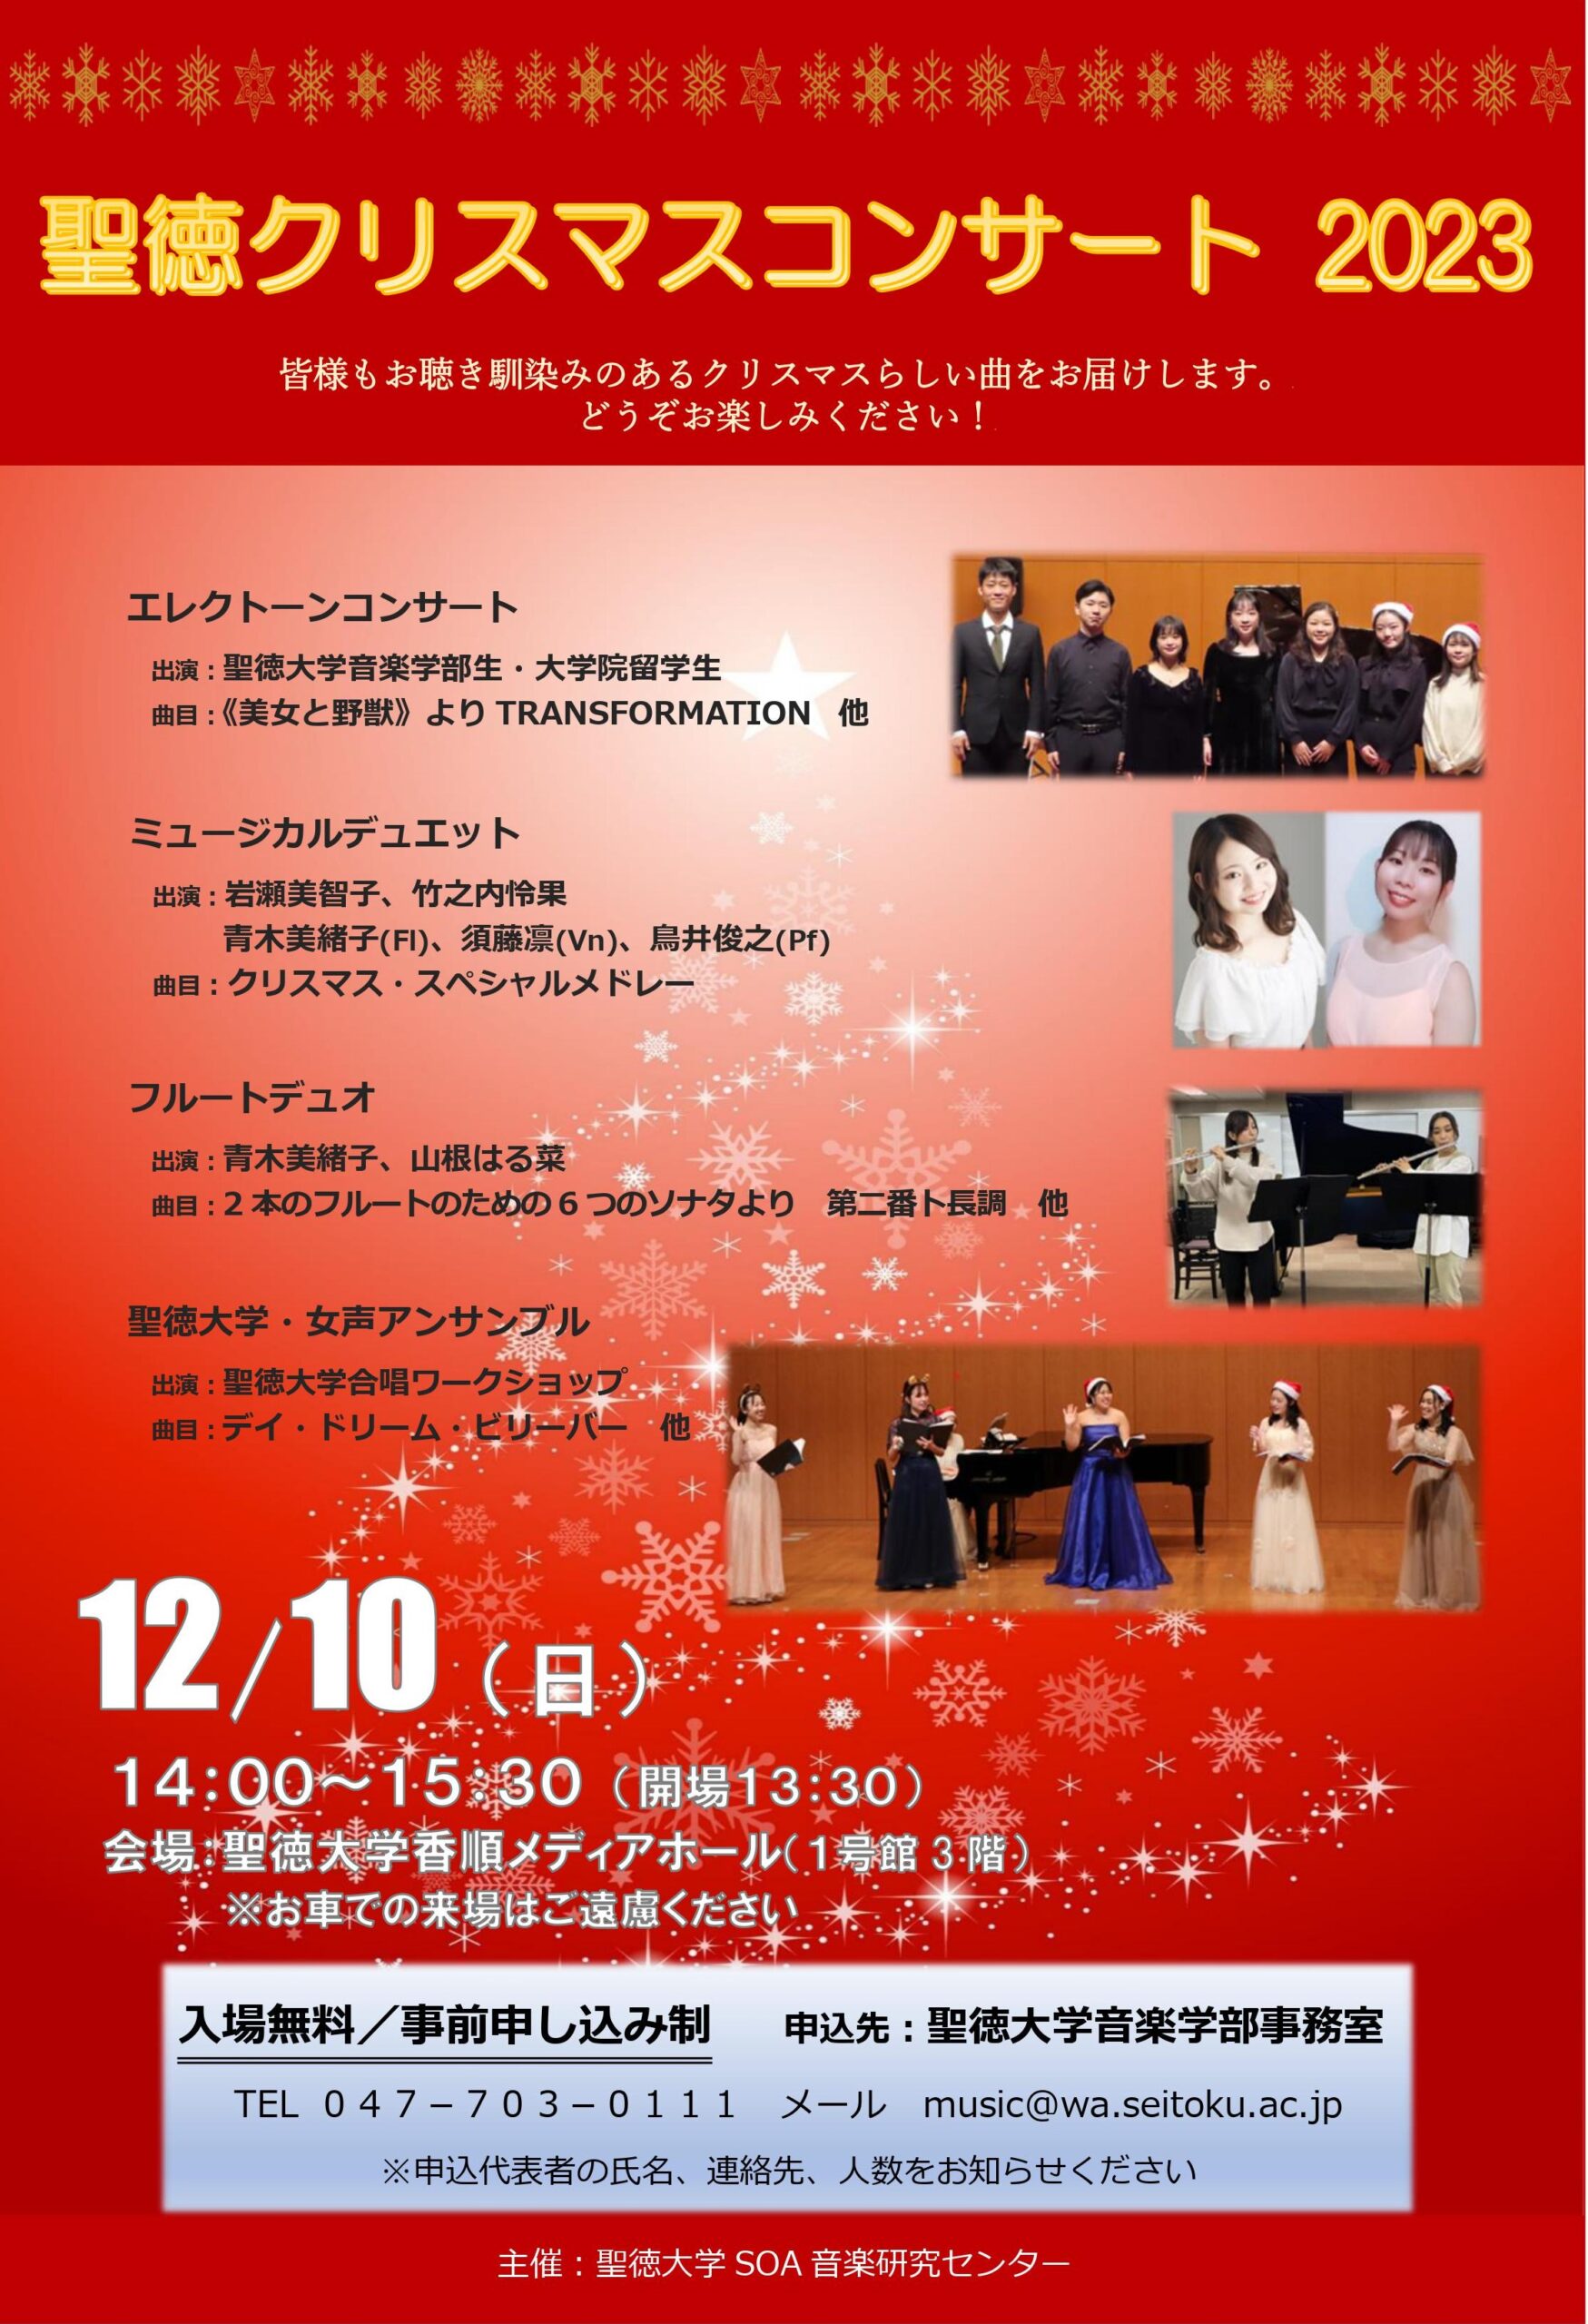 「聖徳クリスマスコンサート2023」開催のお知らせ